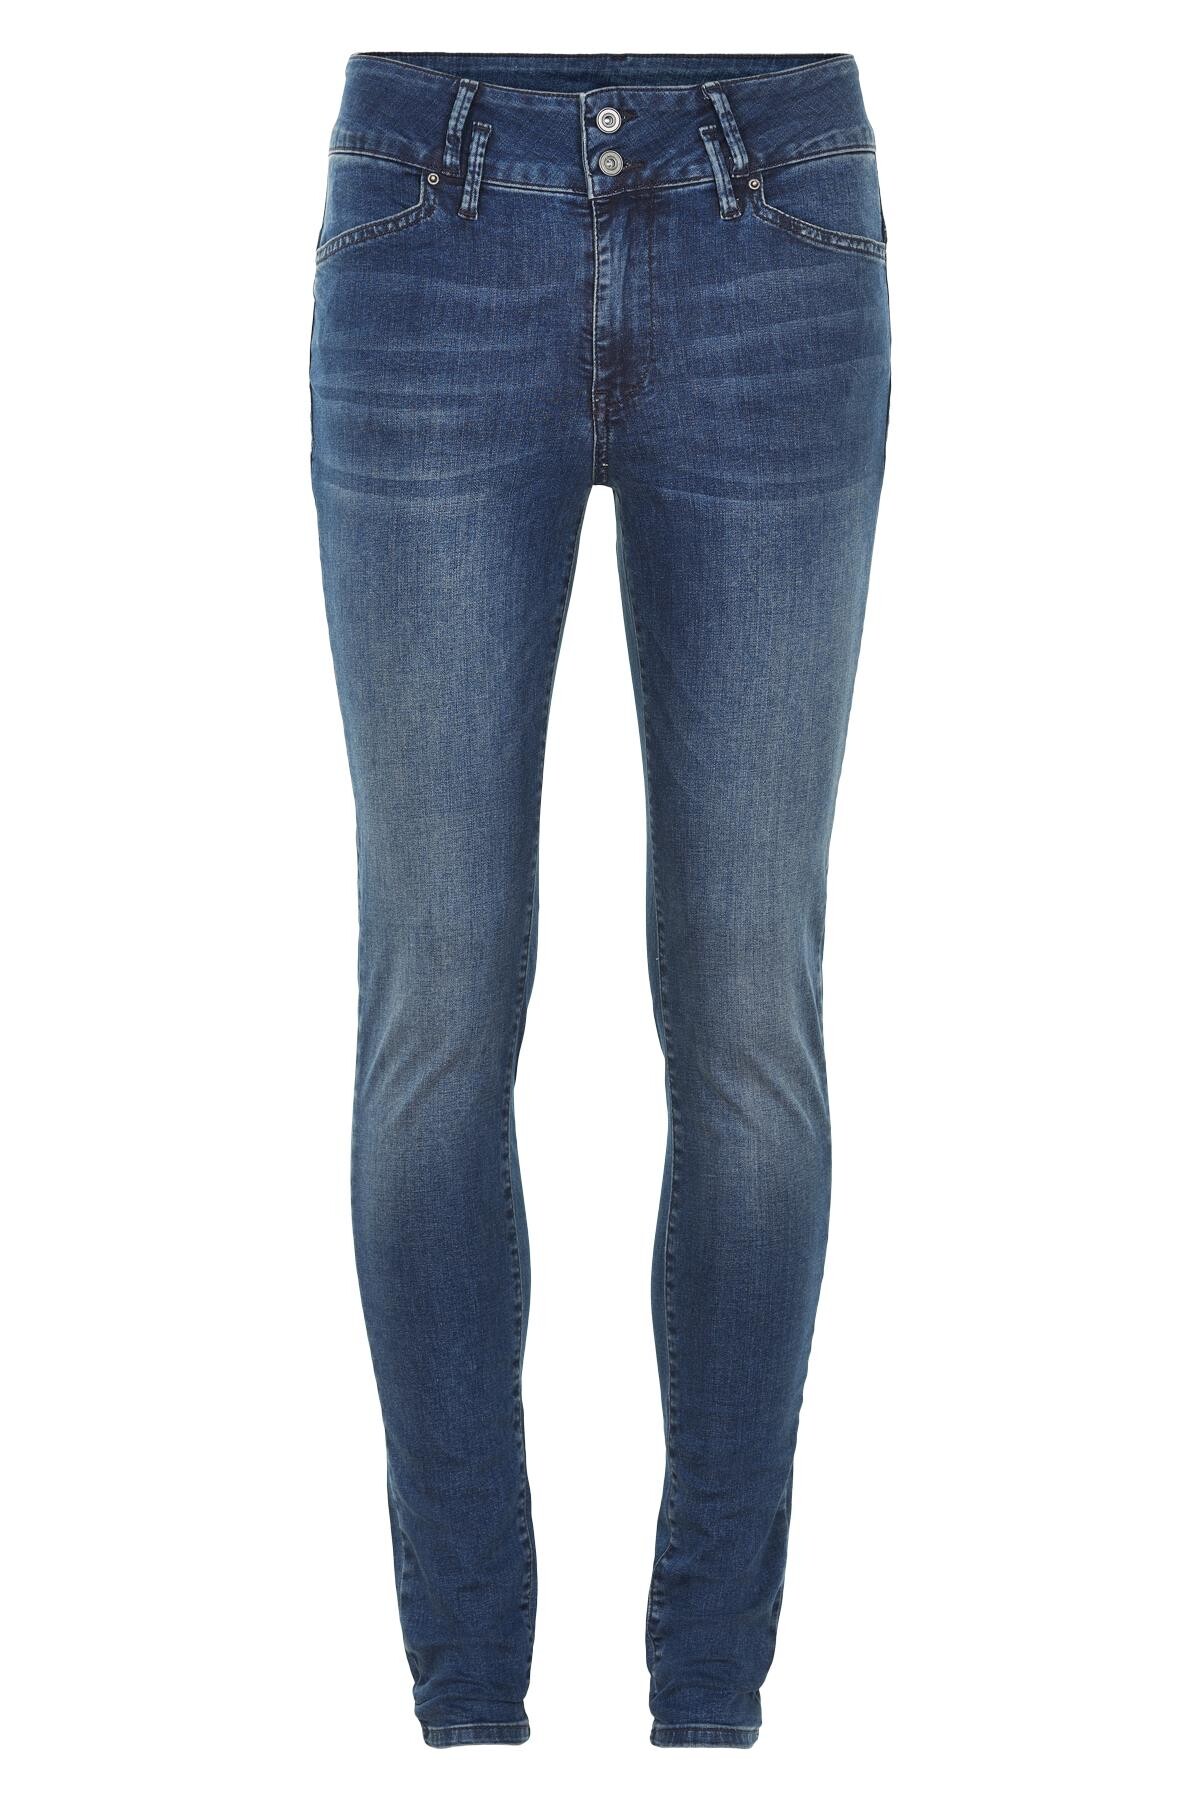 Jam Jeans High Waist Jeans Fc, Farve: Blå, Størrelse: 27, Dame